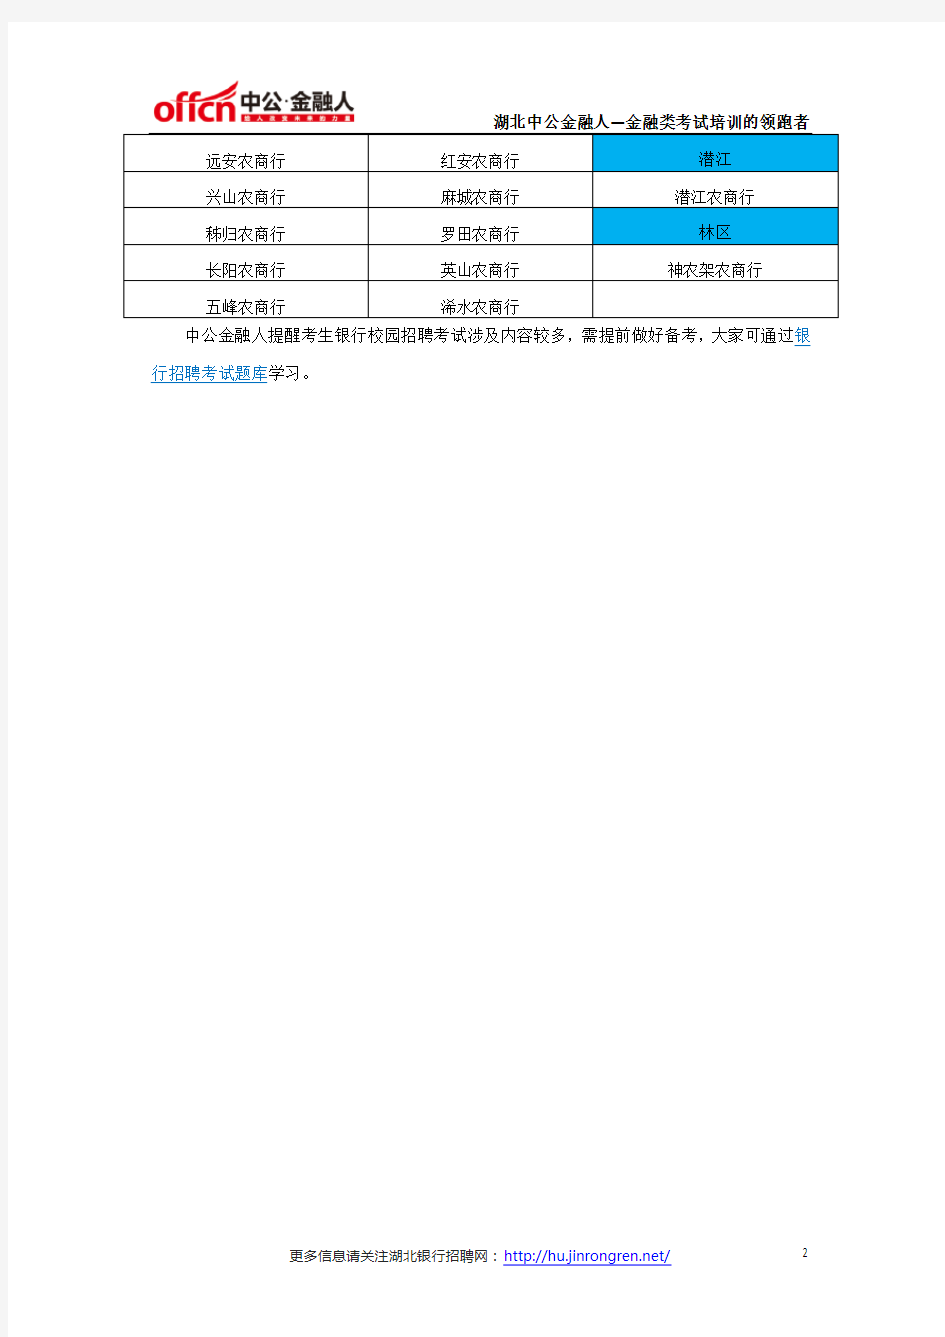 湖北省76家市、县农村商业银行名单